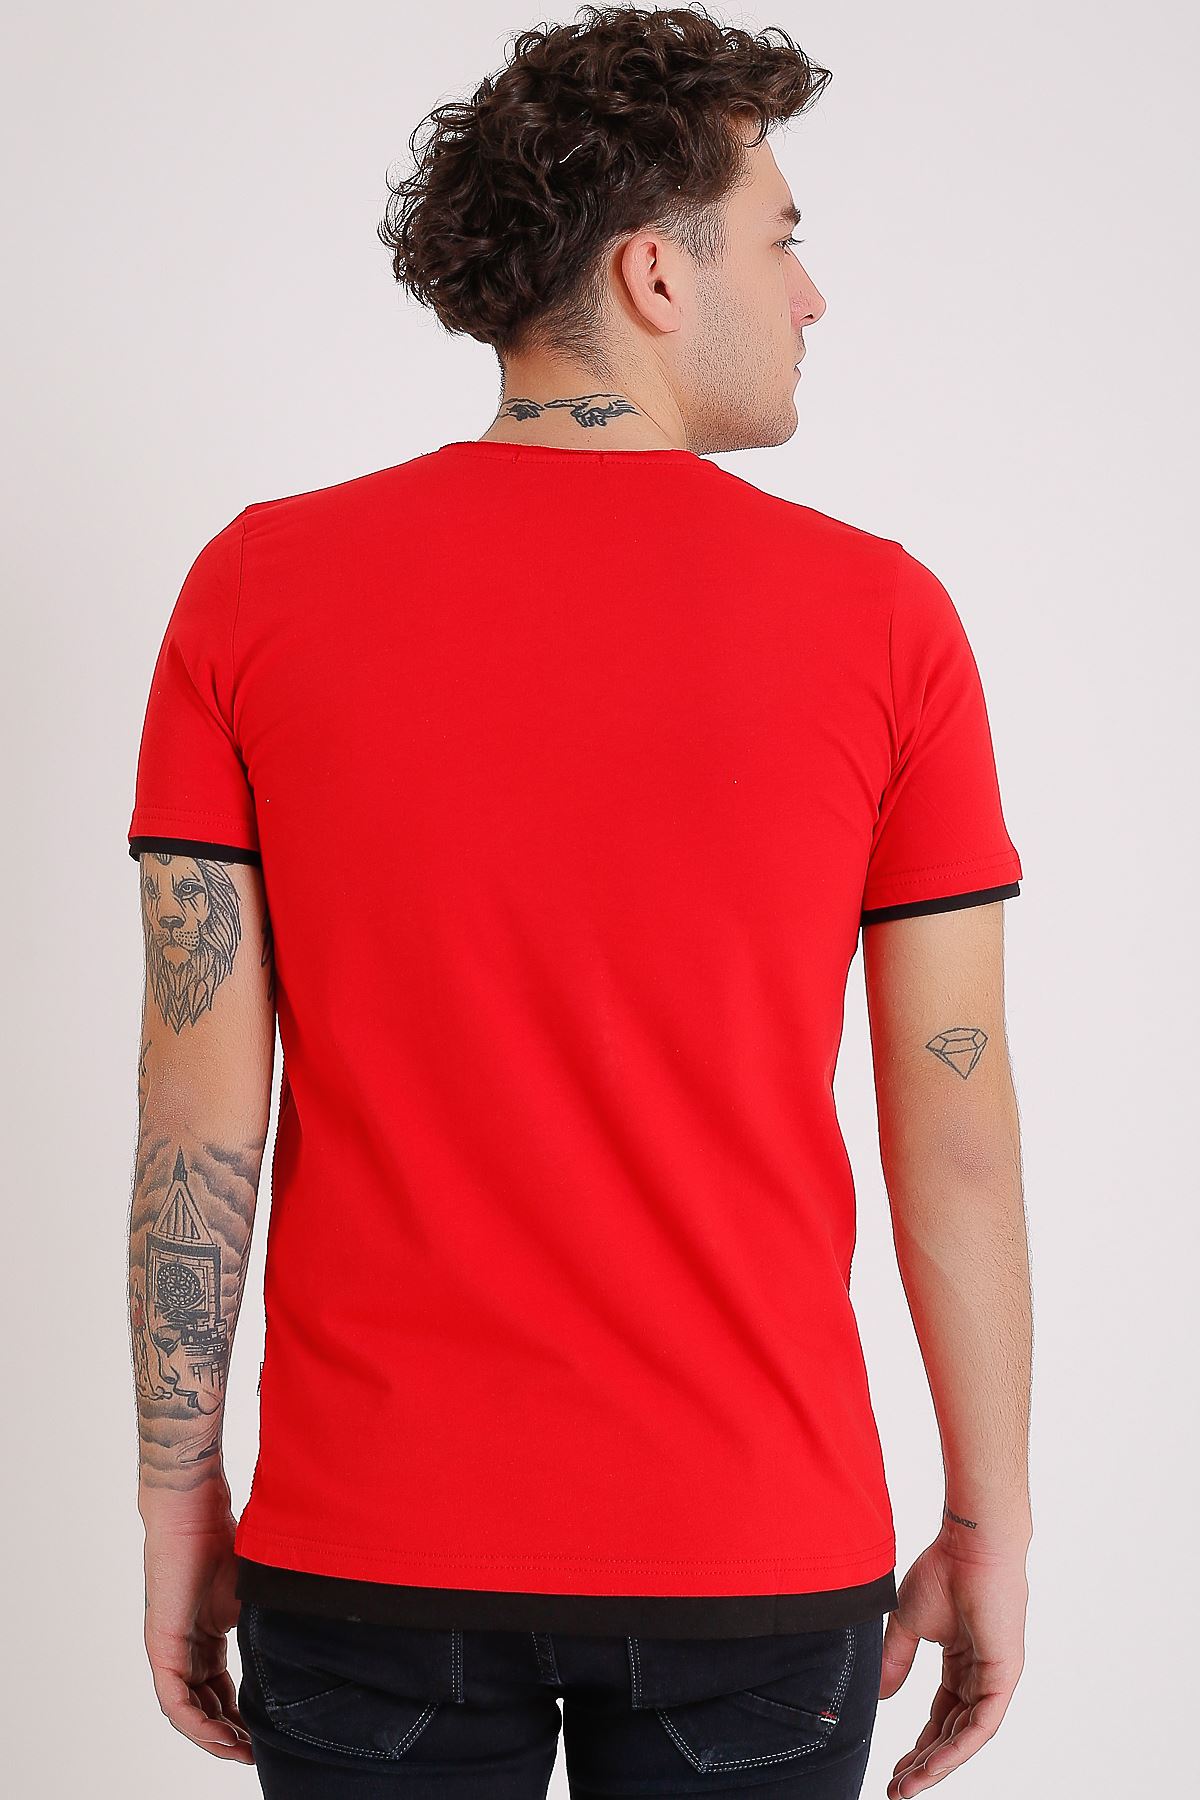 Bisiklet Yaka Baskılı Model Detay Kırmızı Erkek T-Shirt